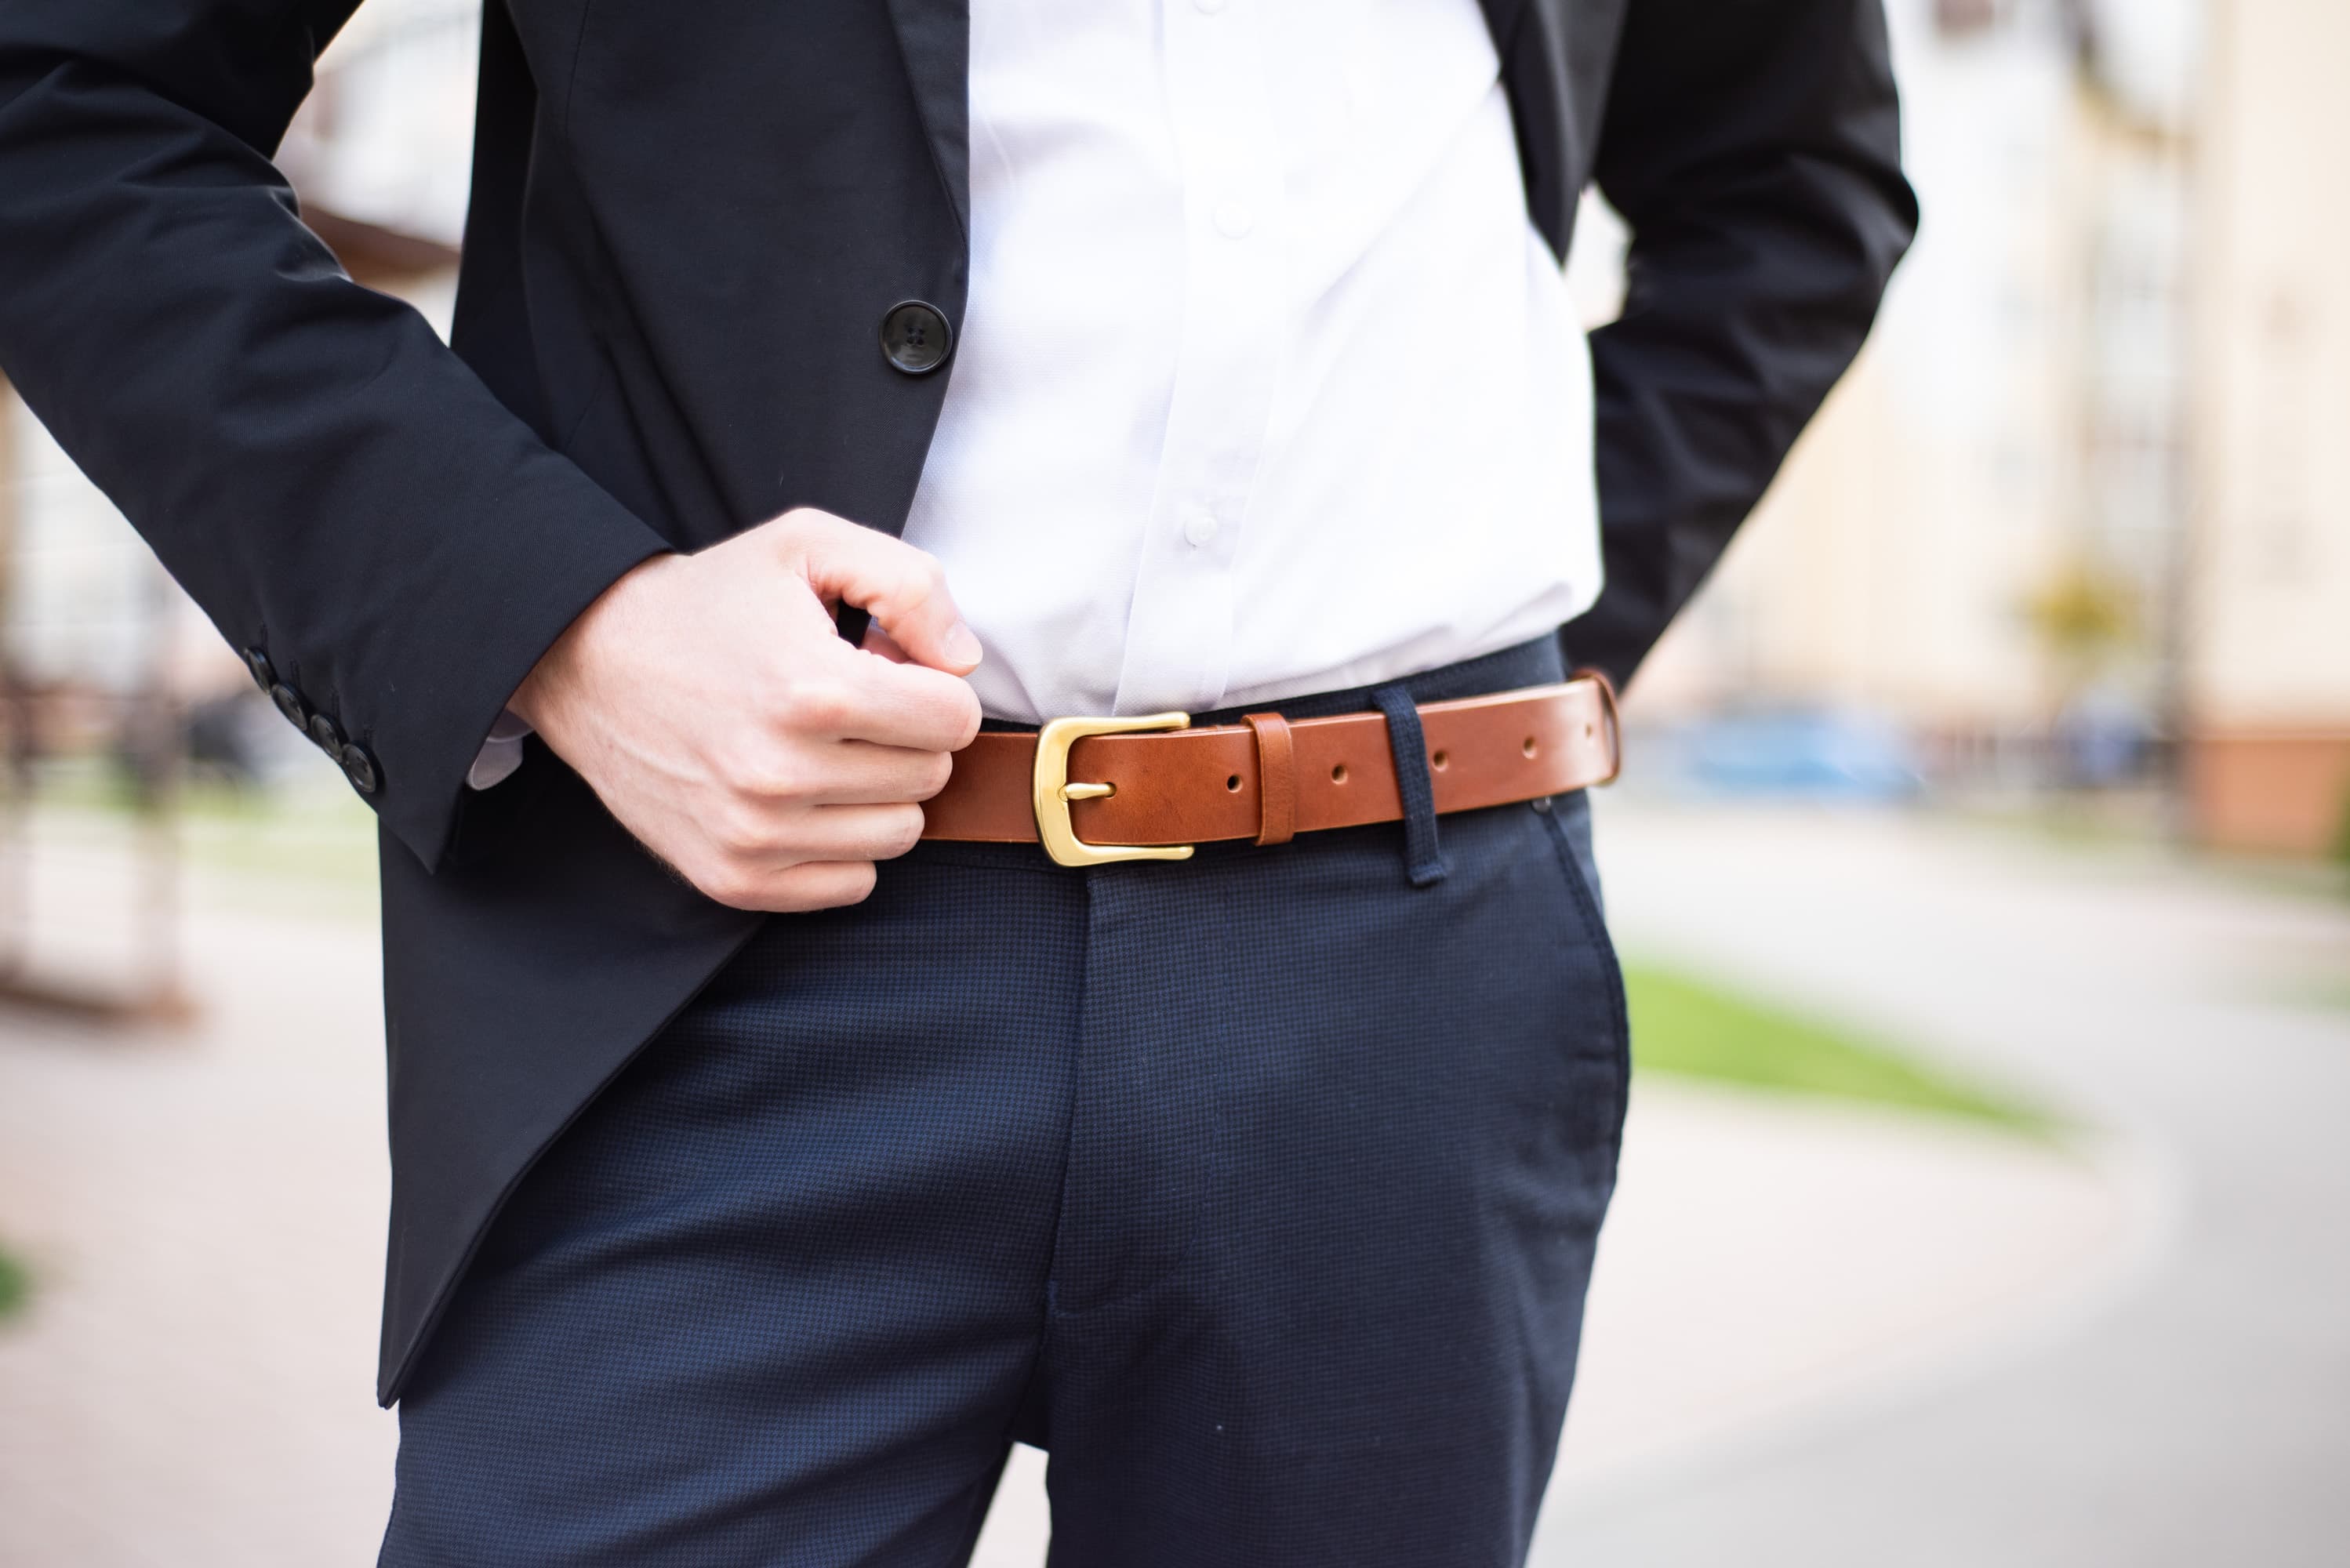 leather belt for men